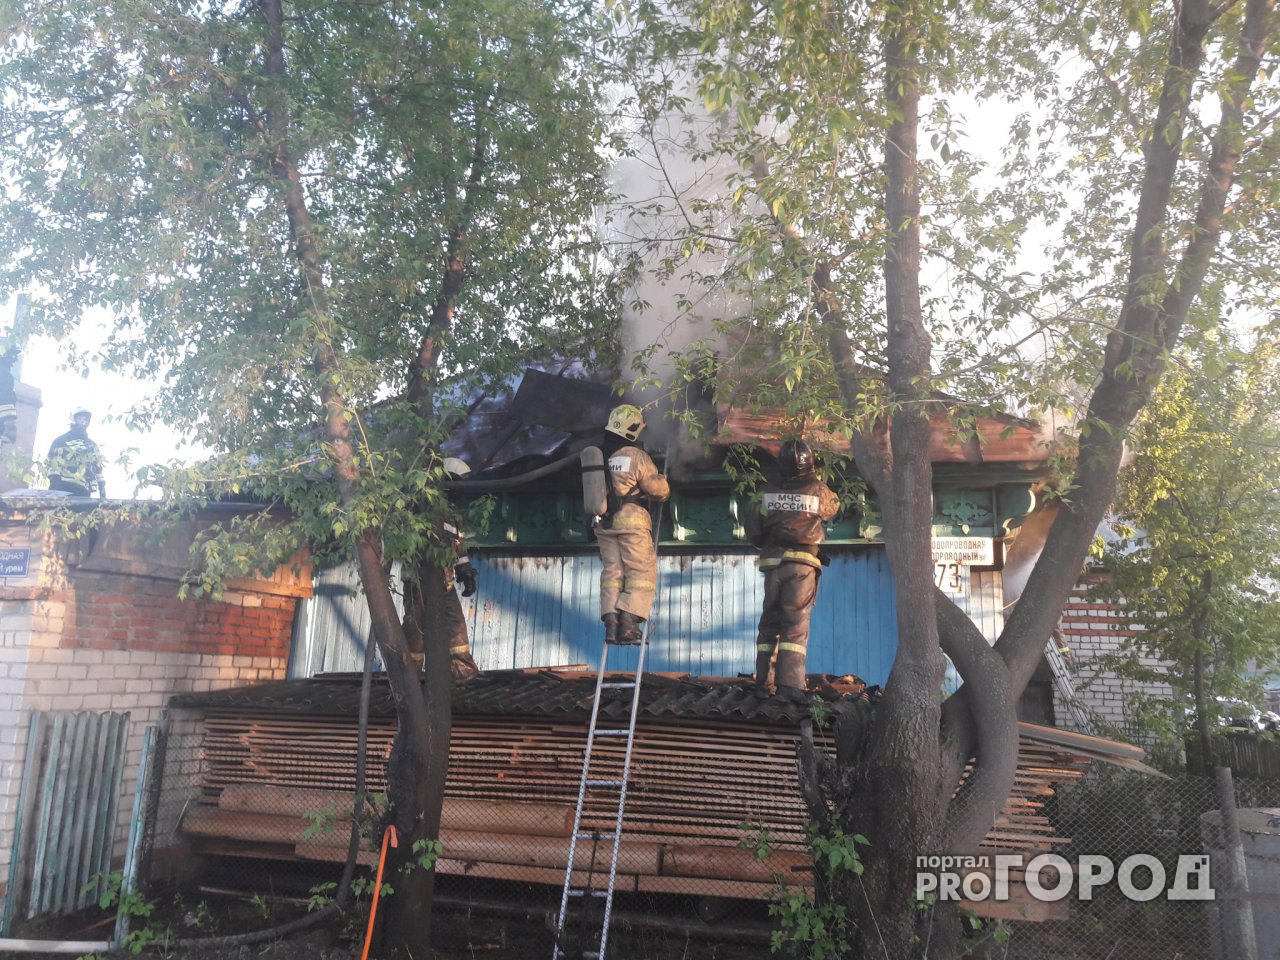 Прямо сейчас в Йошкар-Оле горит частный дом. Фото с места